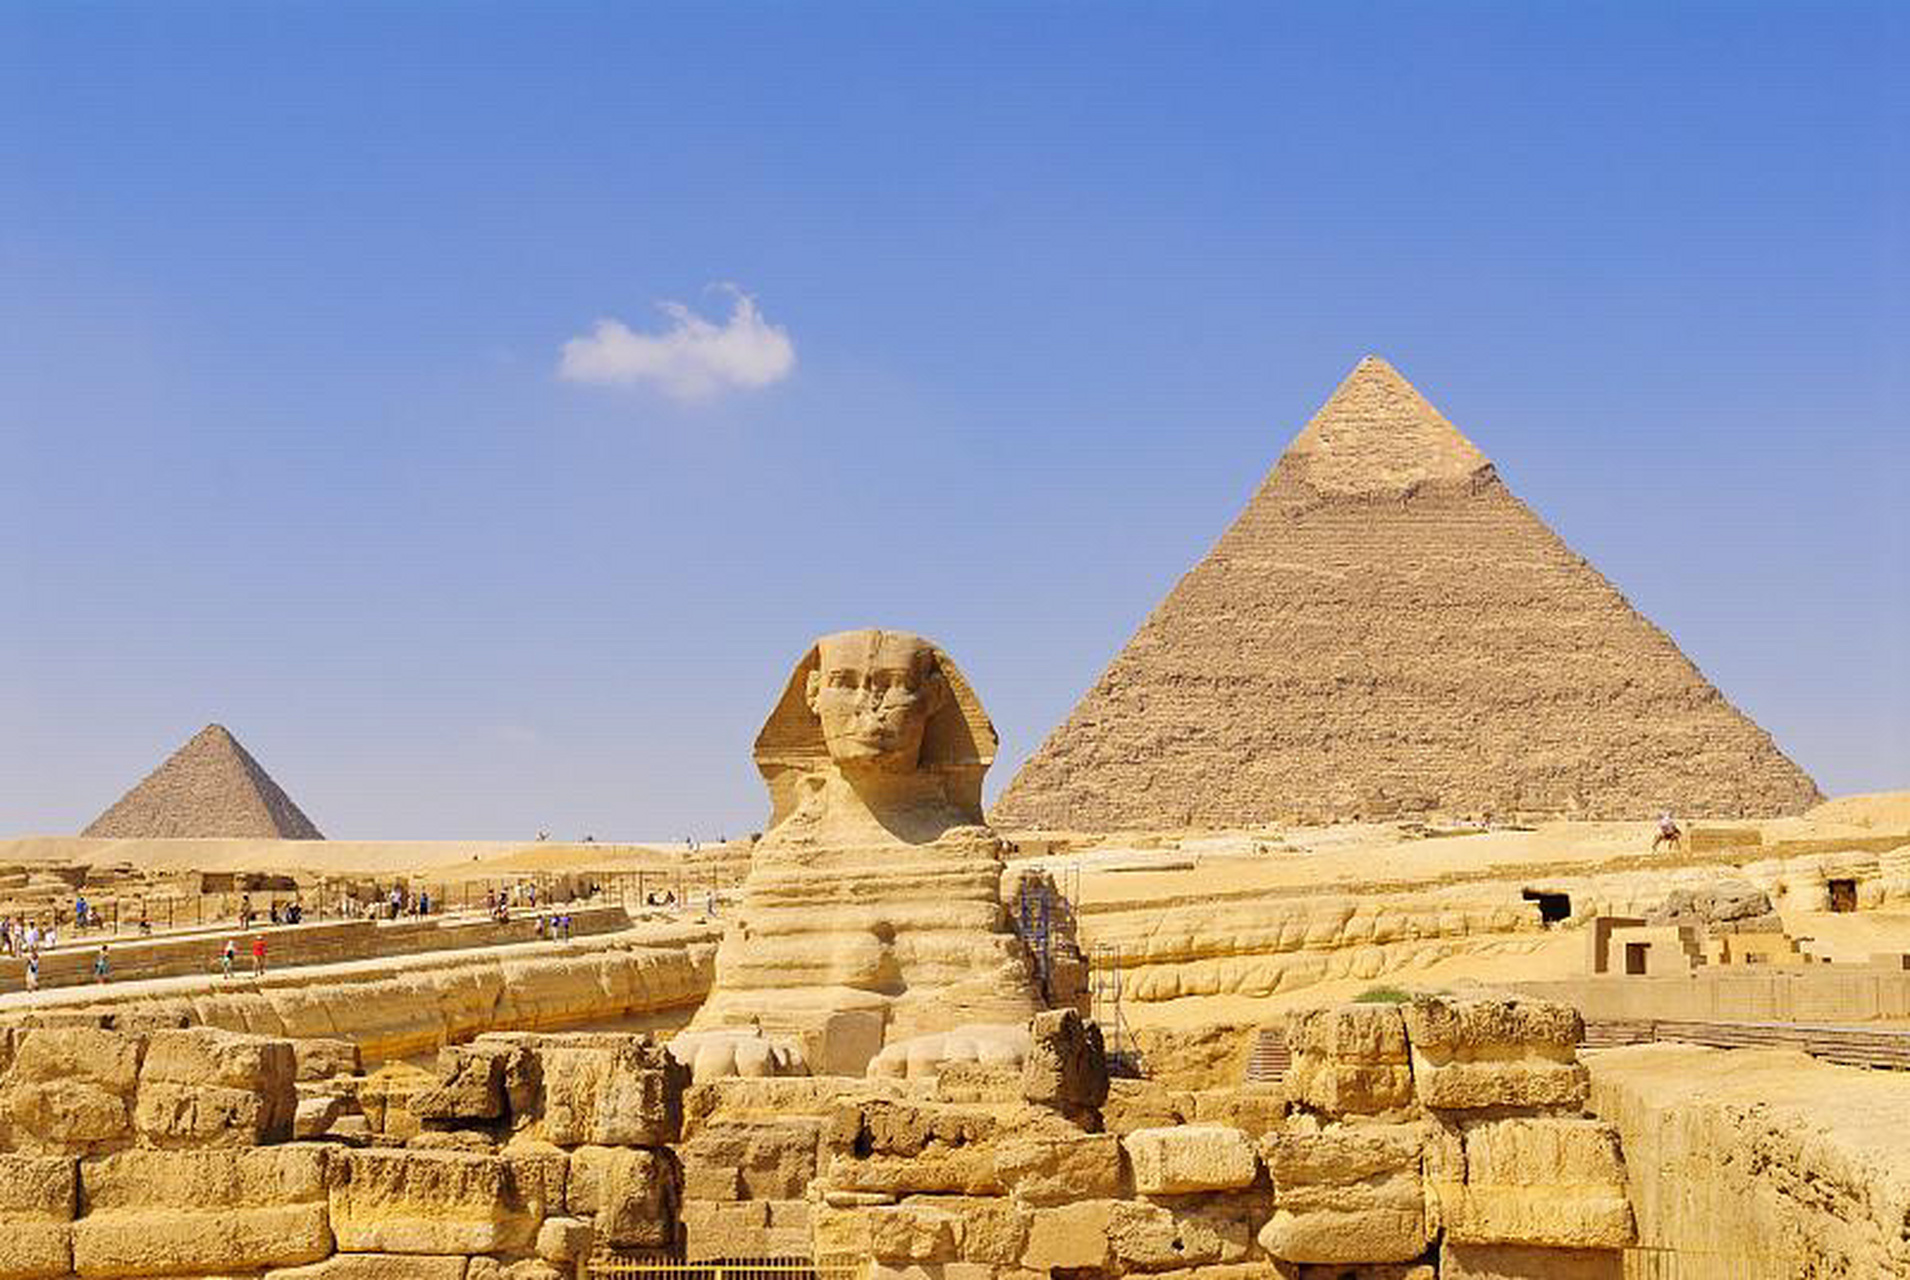 埃及金字塔 埃及金字塔是埃及最古老,最恢弘的纪念性建筑